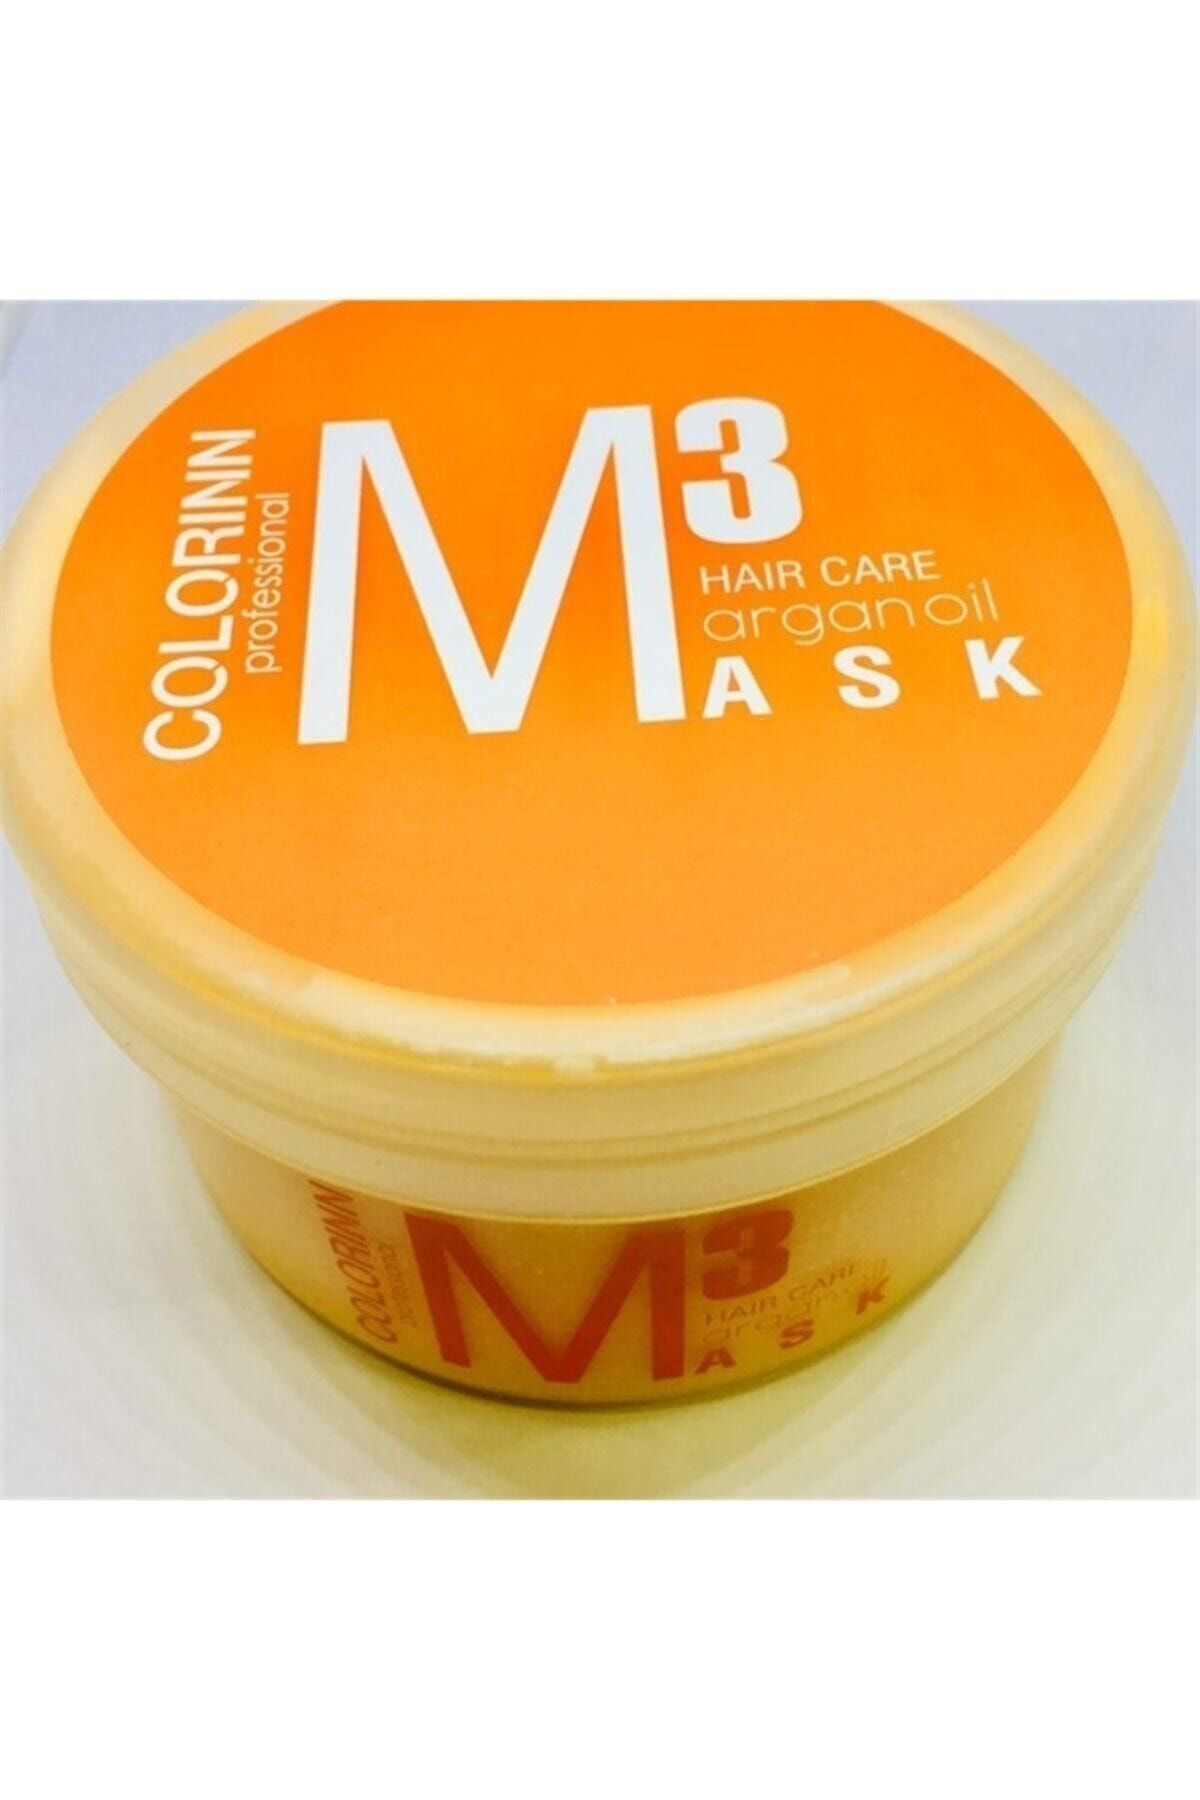 Colorinn M3 Argan Oil Hair Care Mask